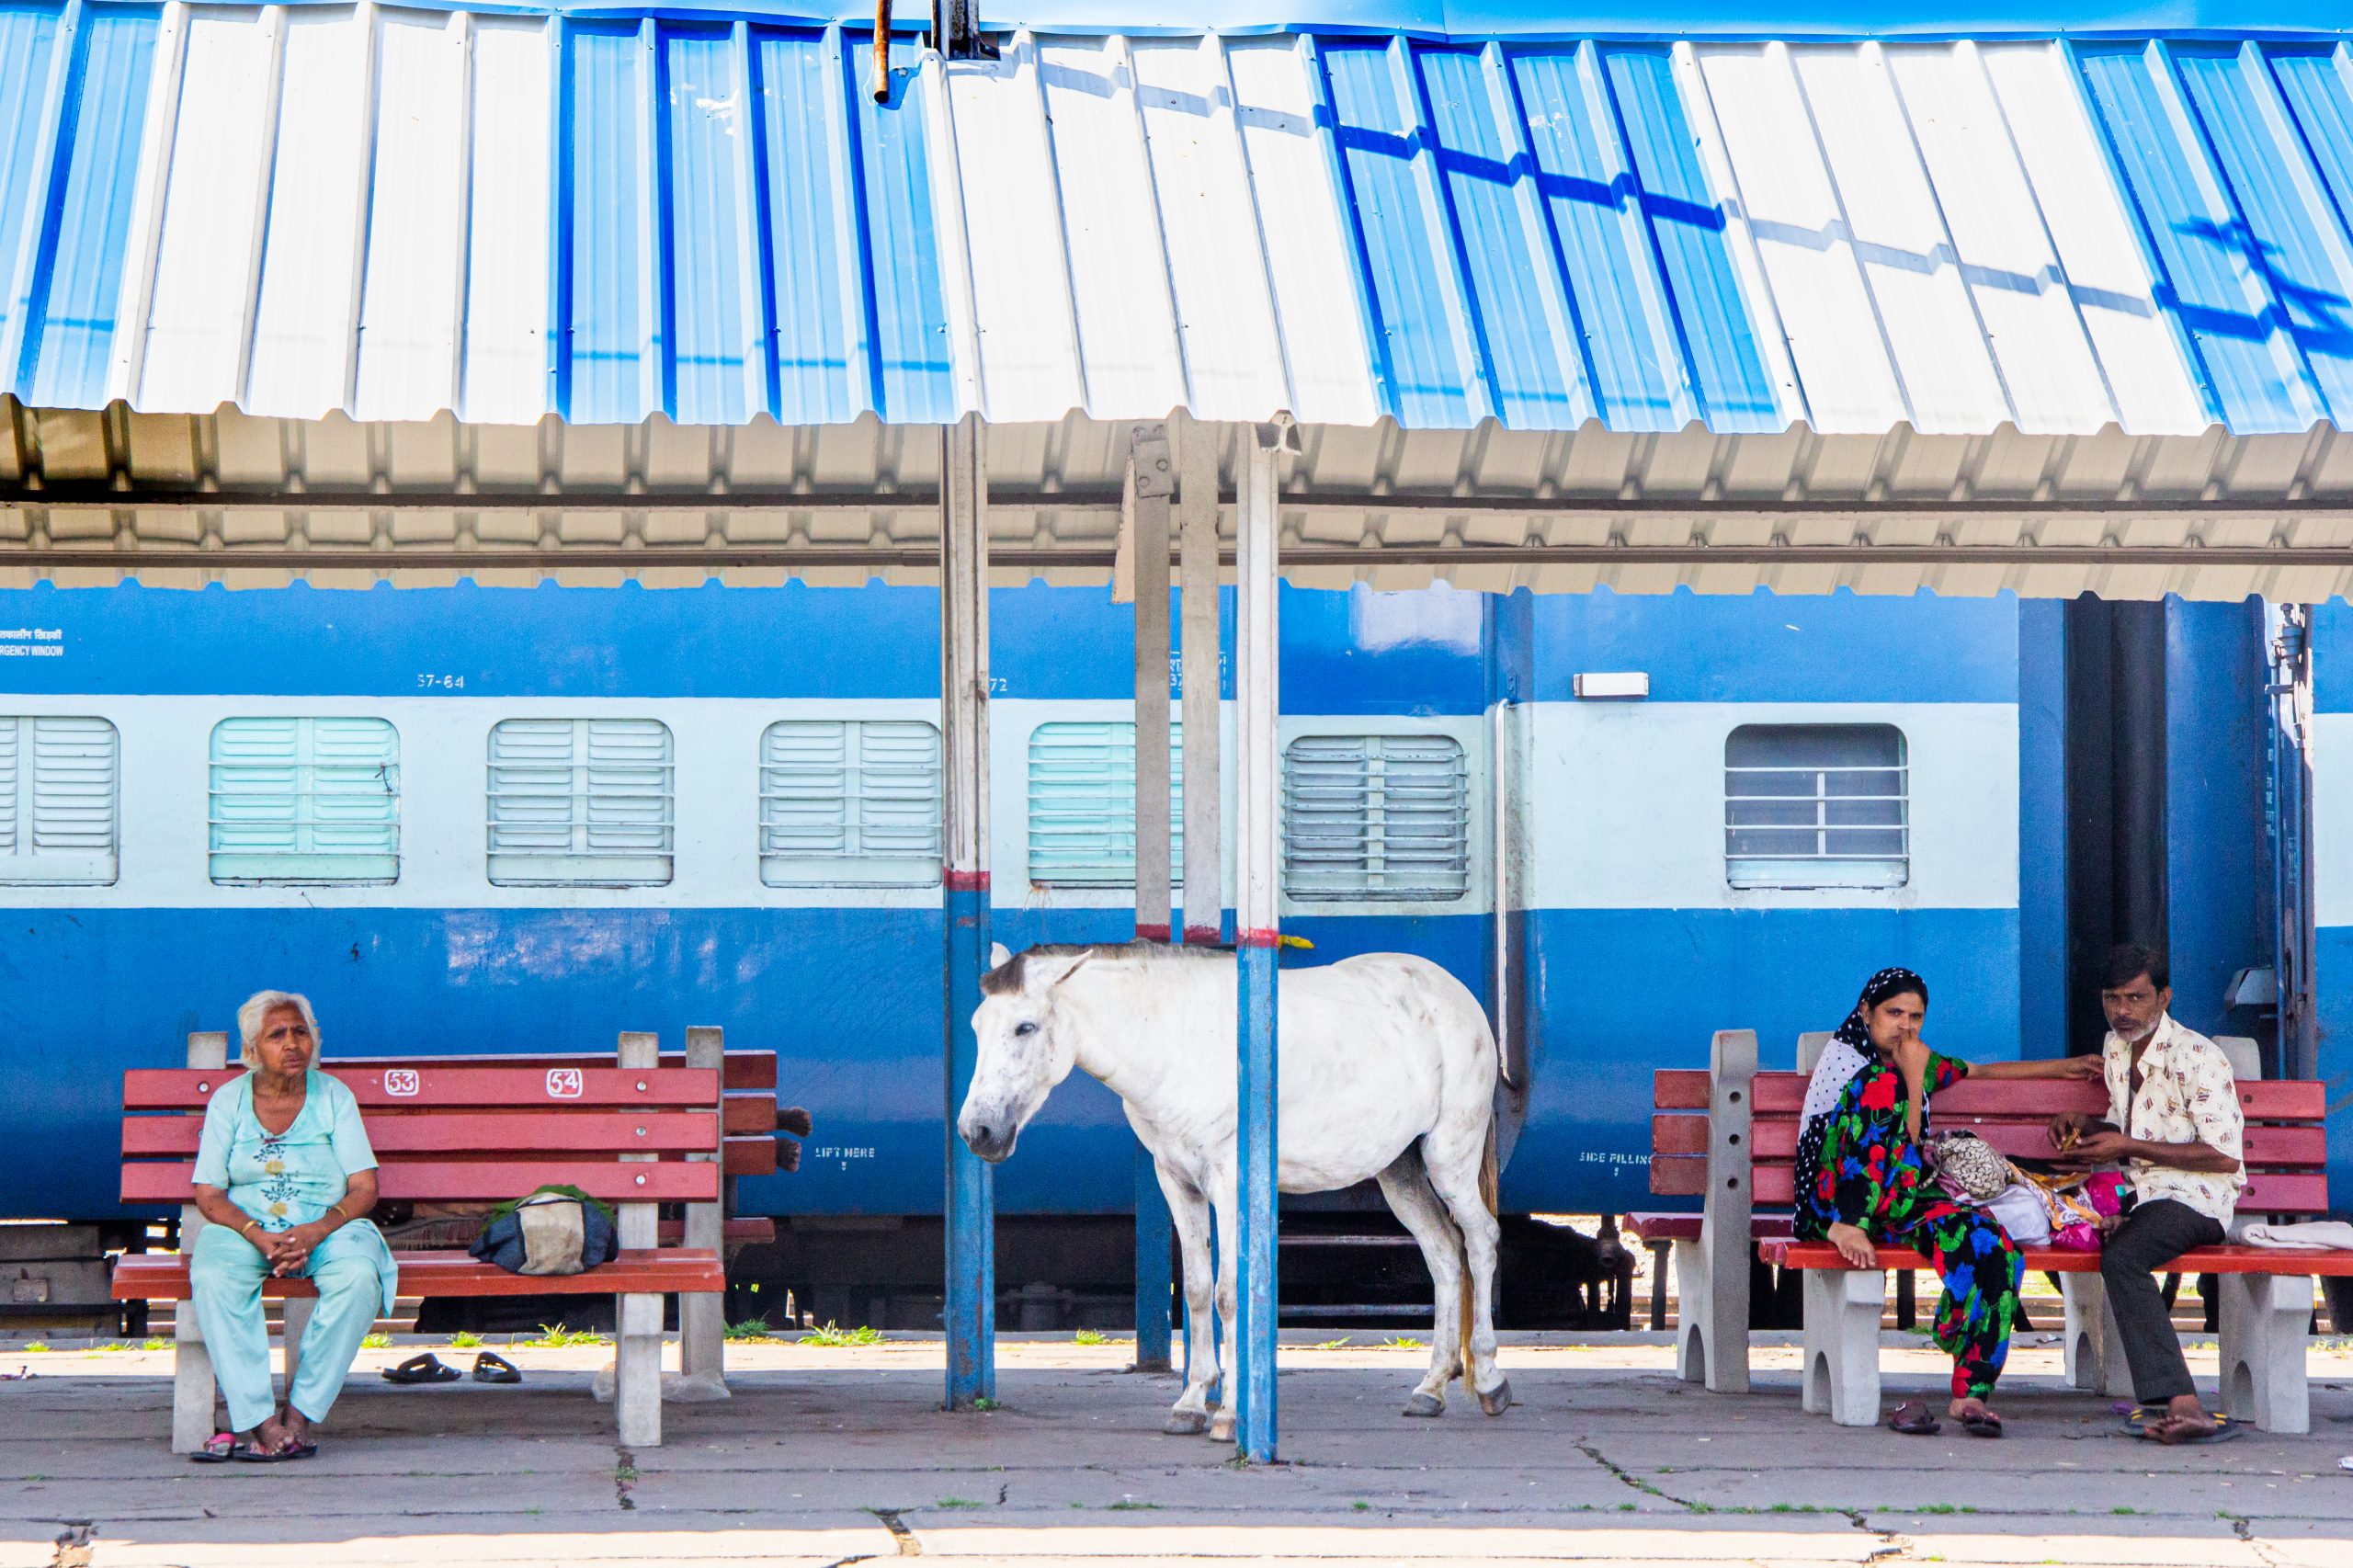 Le cheval dans la gare 40X60cm- Luana Rocchesani